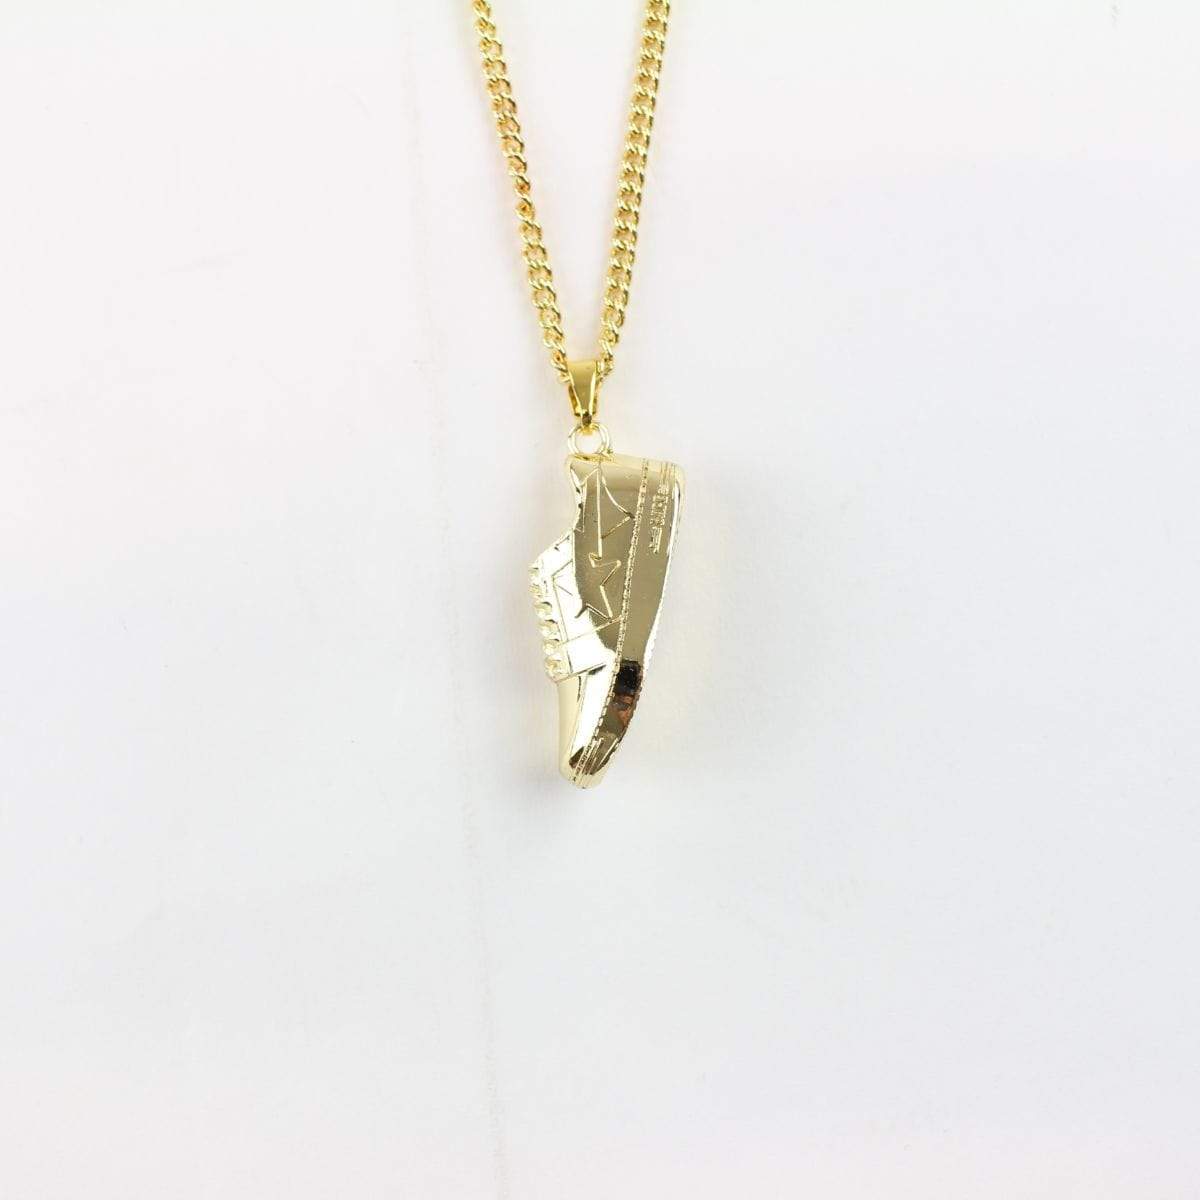 Bapesta Pendant Gold Necklace - SaruGeneral